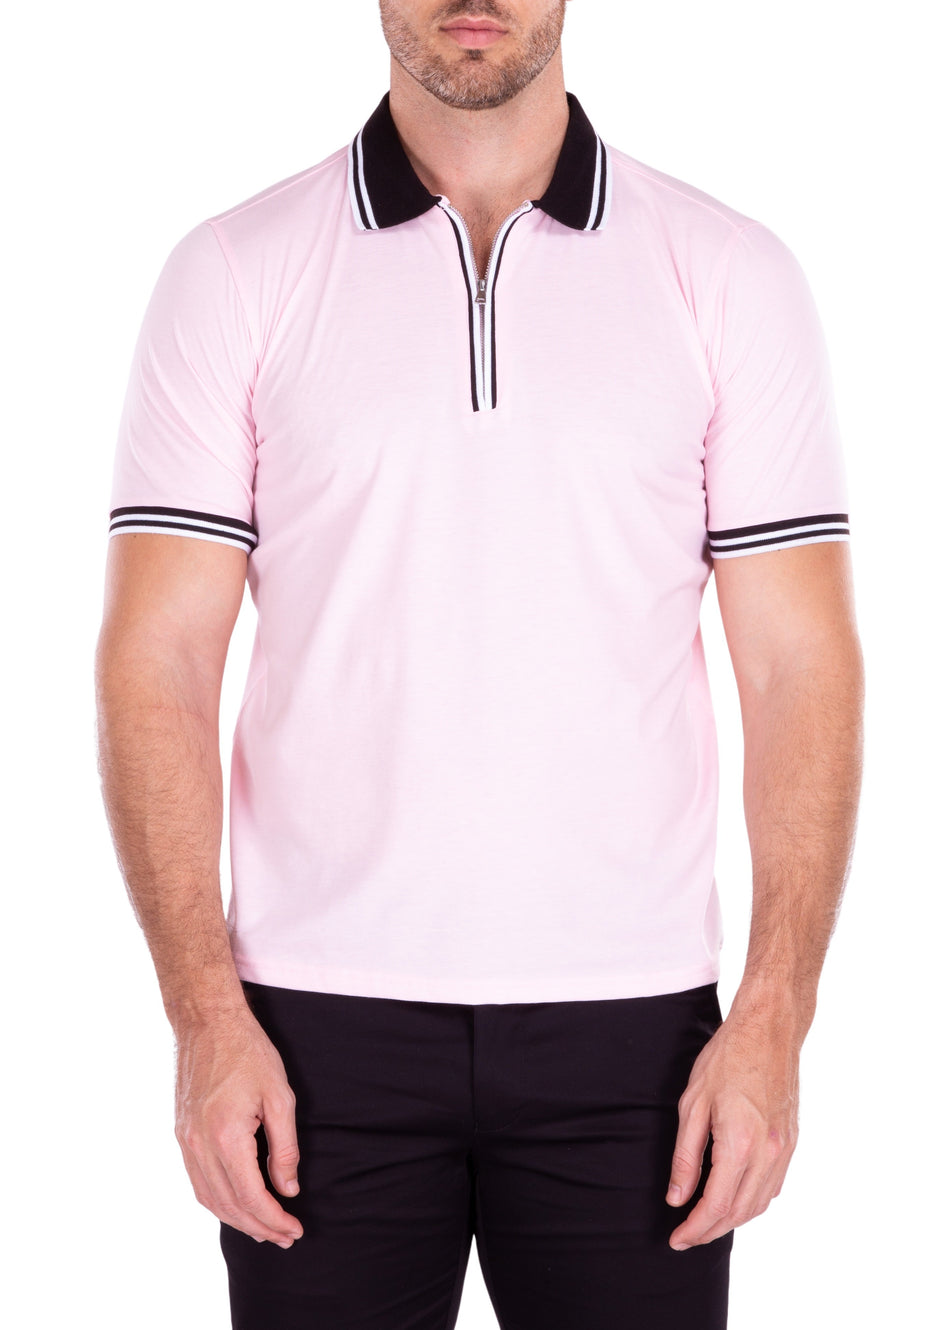 211819 - Pink Zipper Polo Shirt